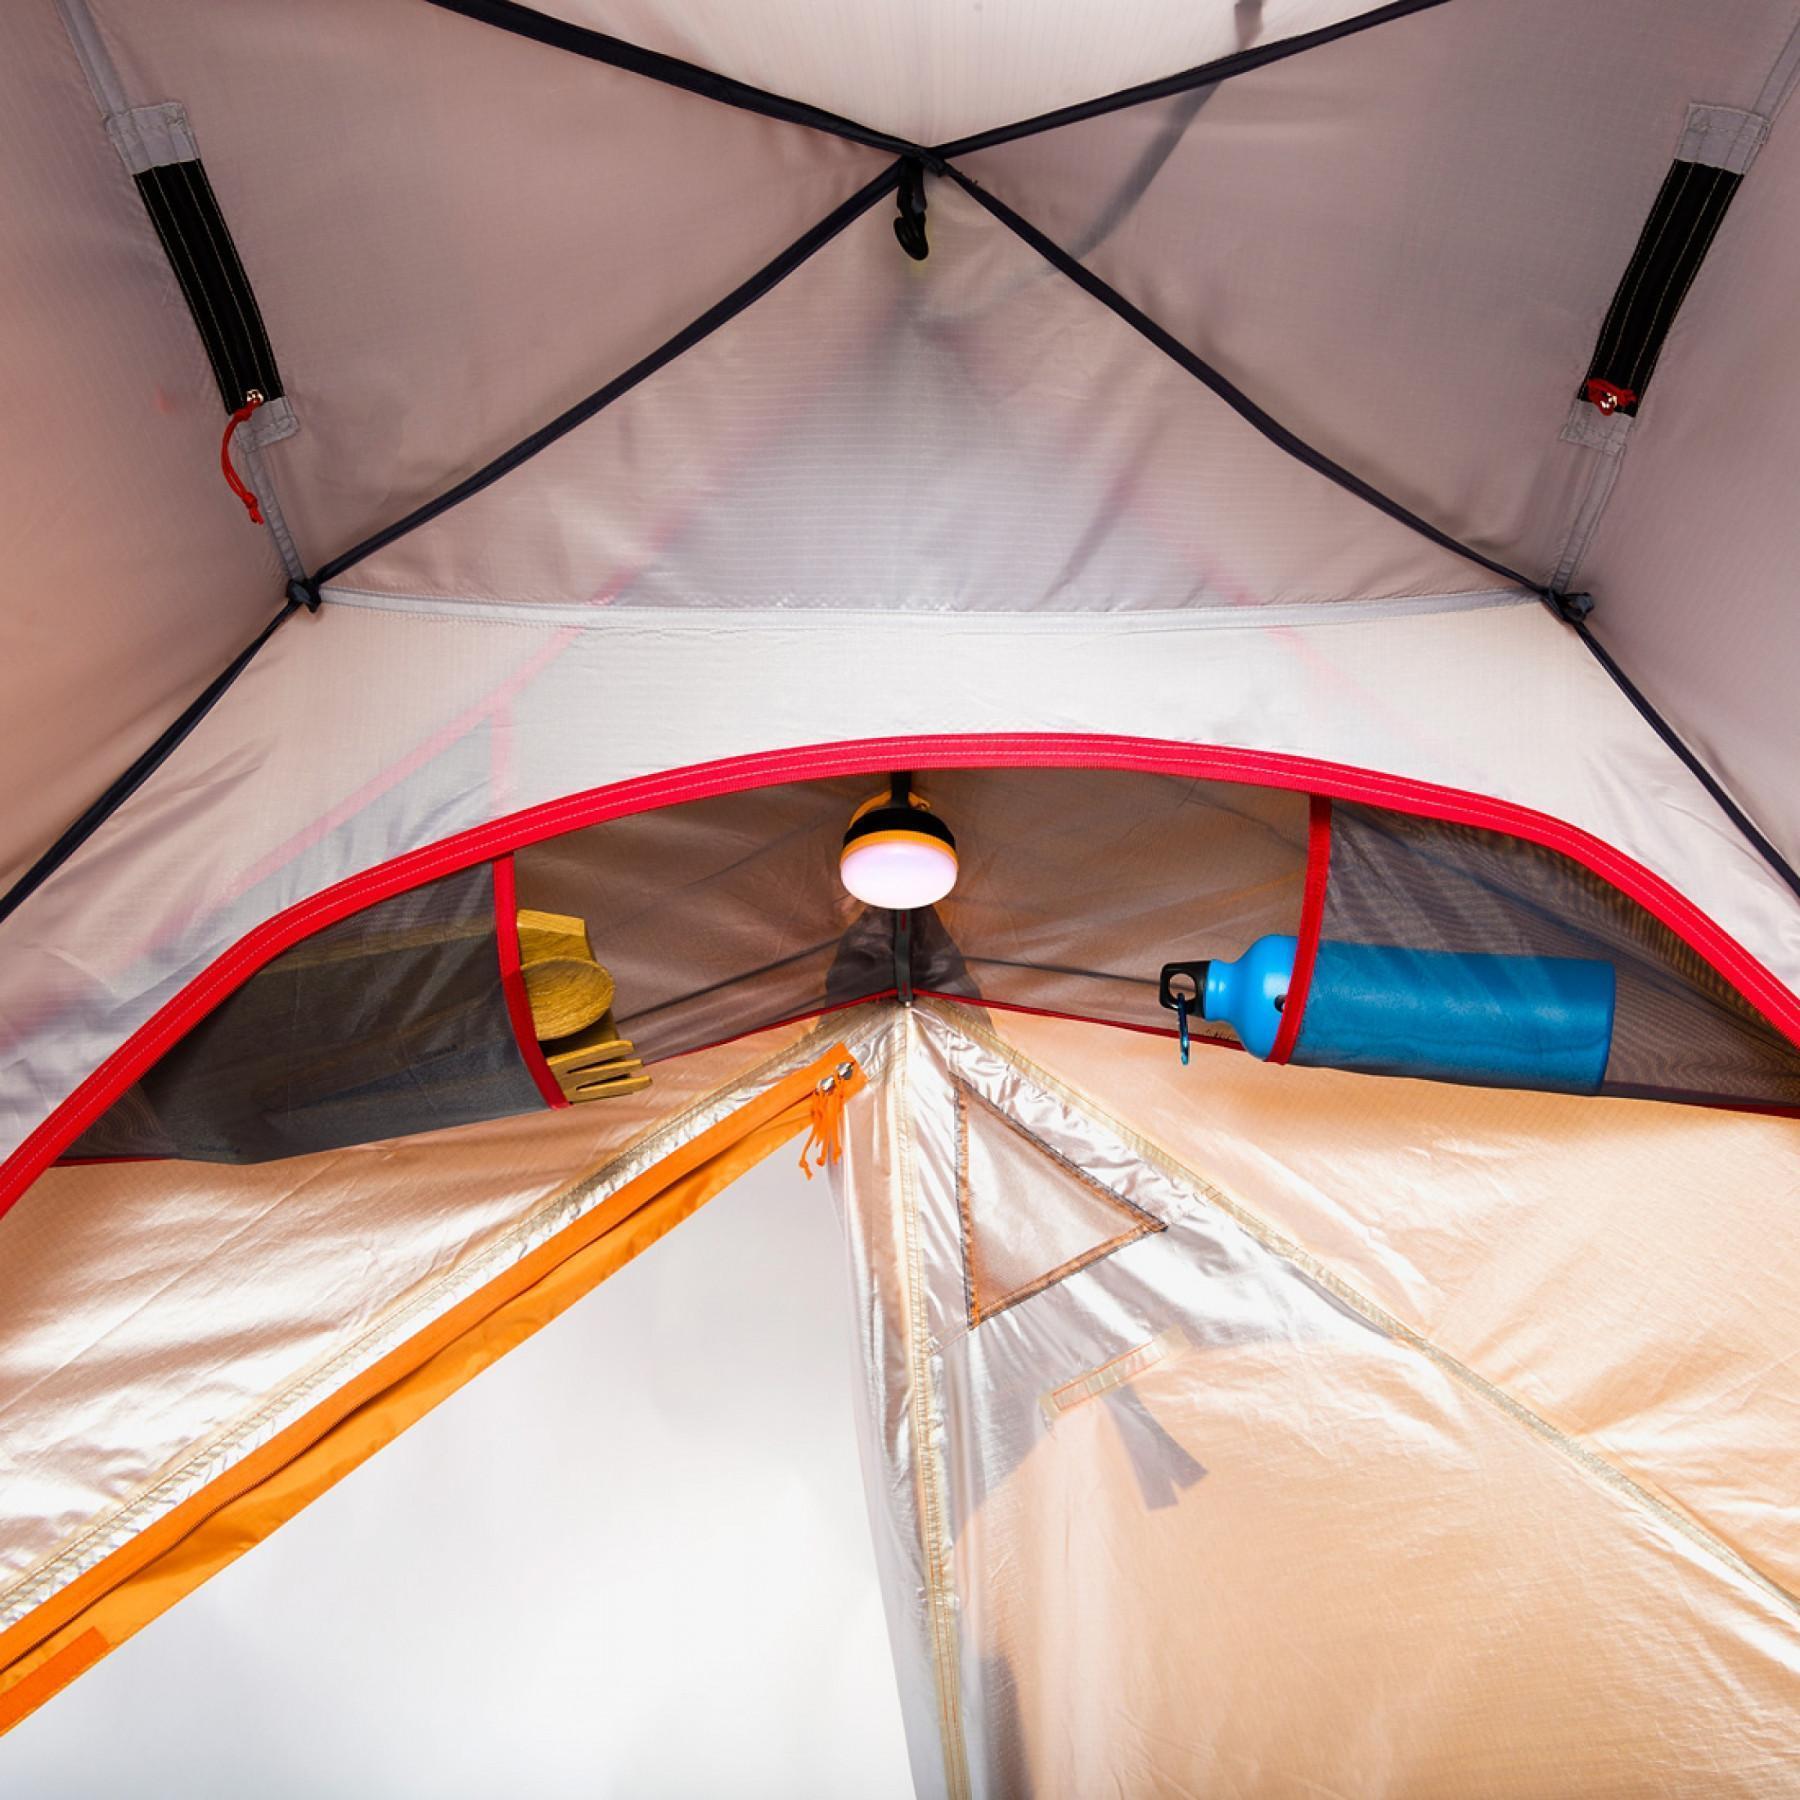 Tent storage net Ferrino